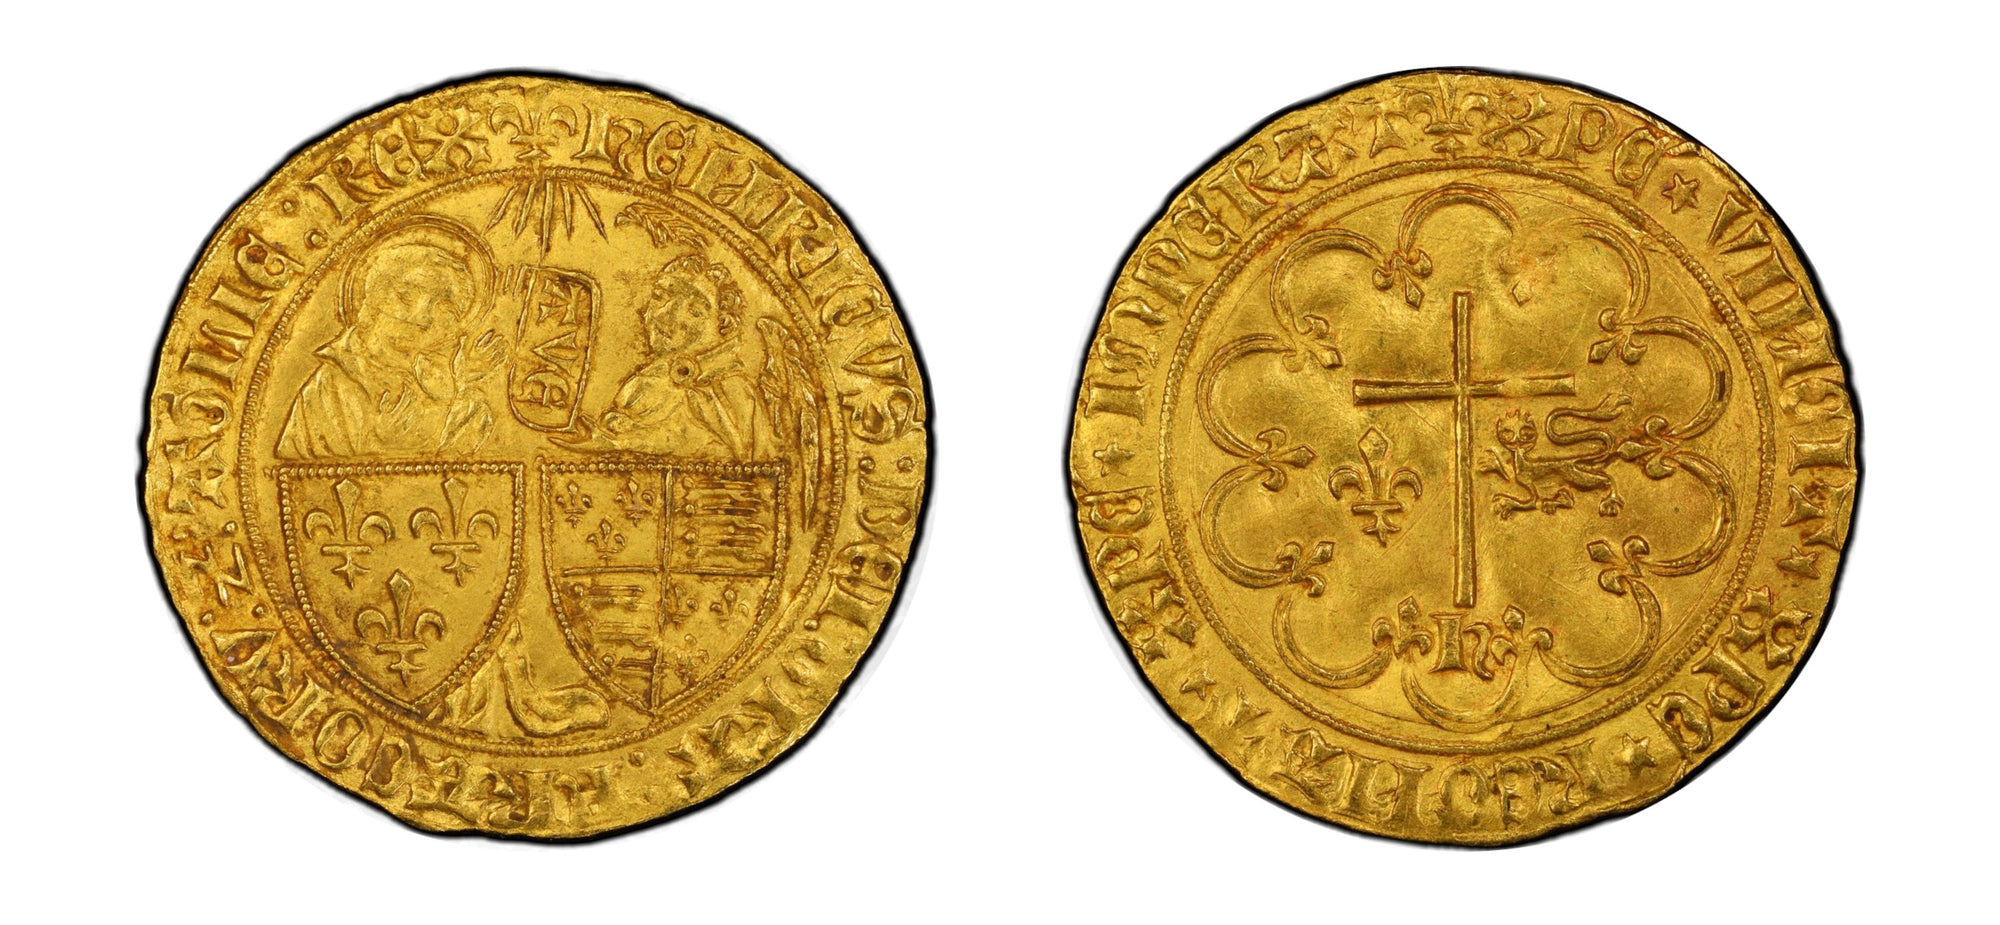 1422-1453 Gold Salut D'OR King Henry VI PCGS MS63 - Hard Asset Management, Inc